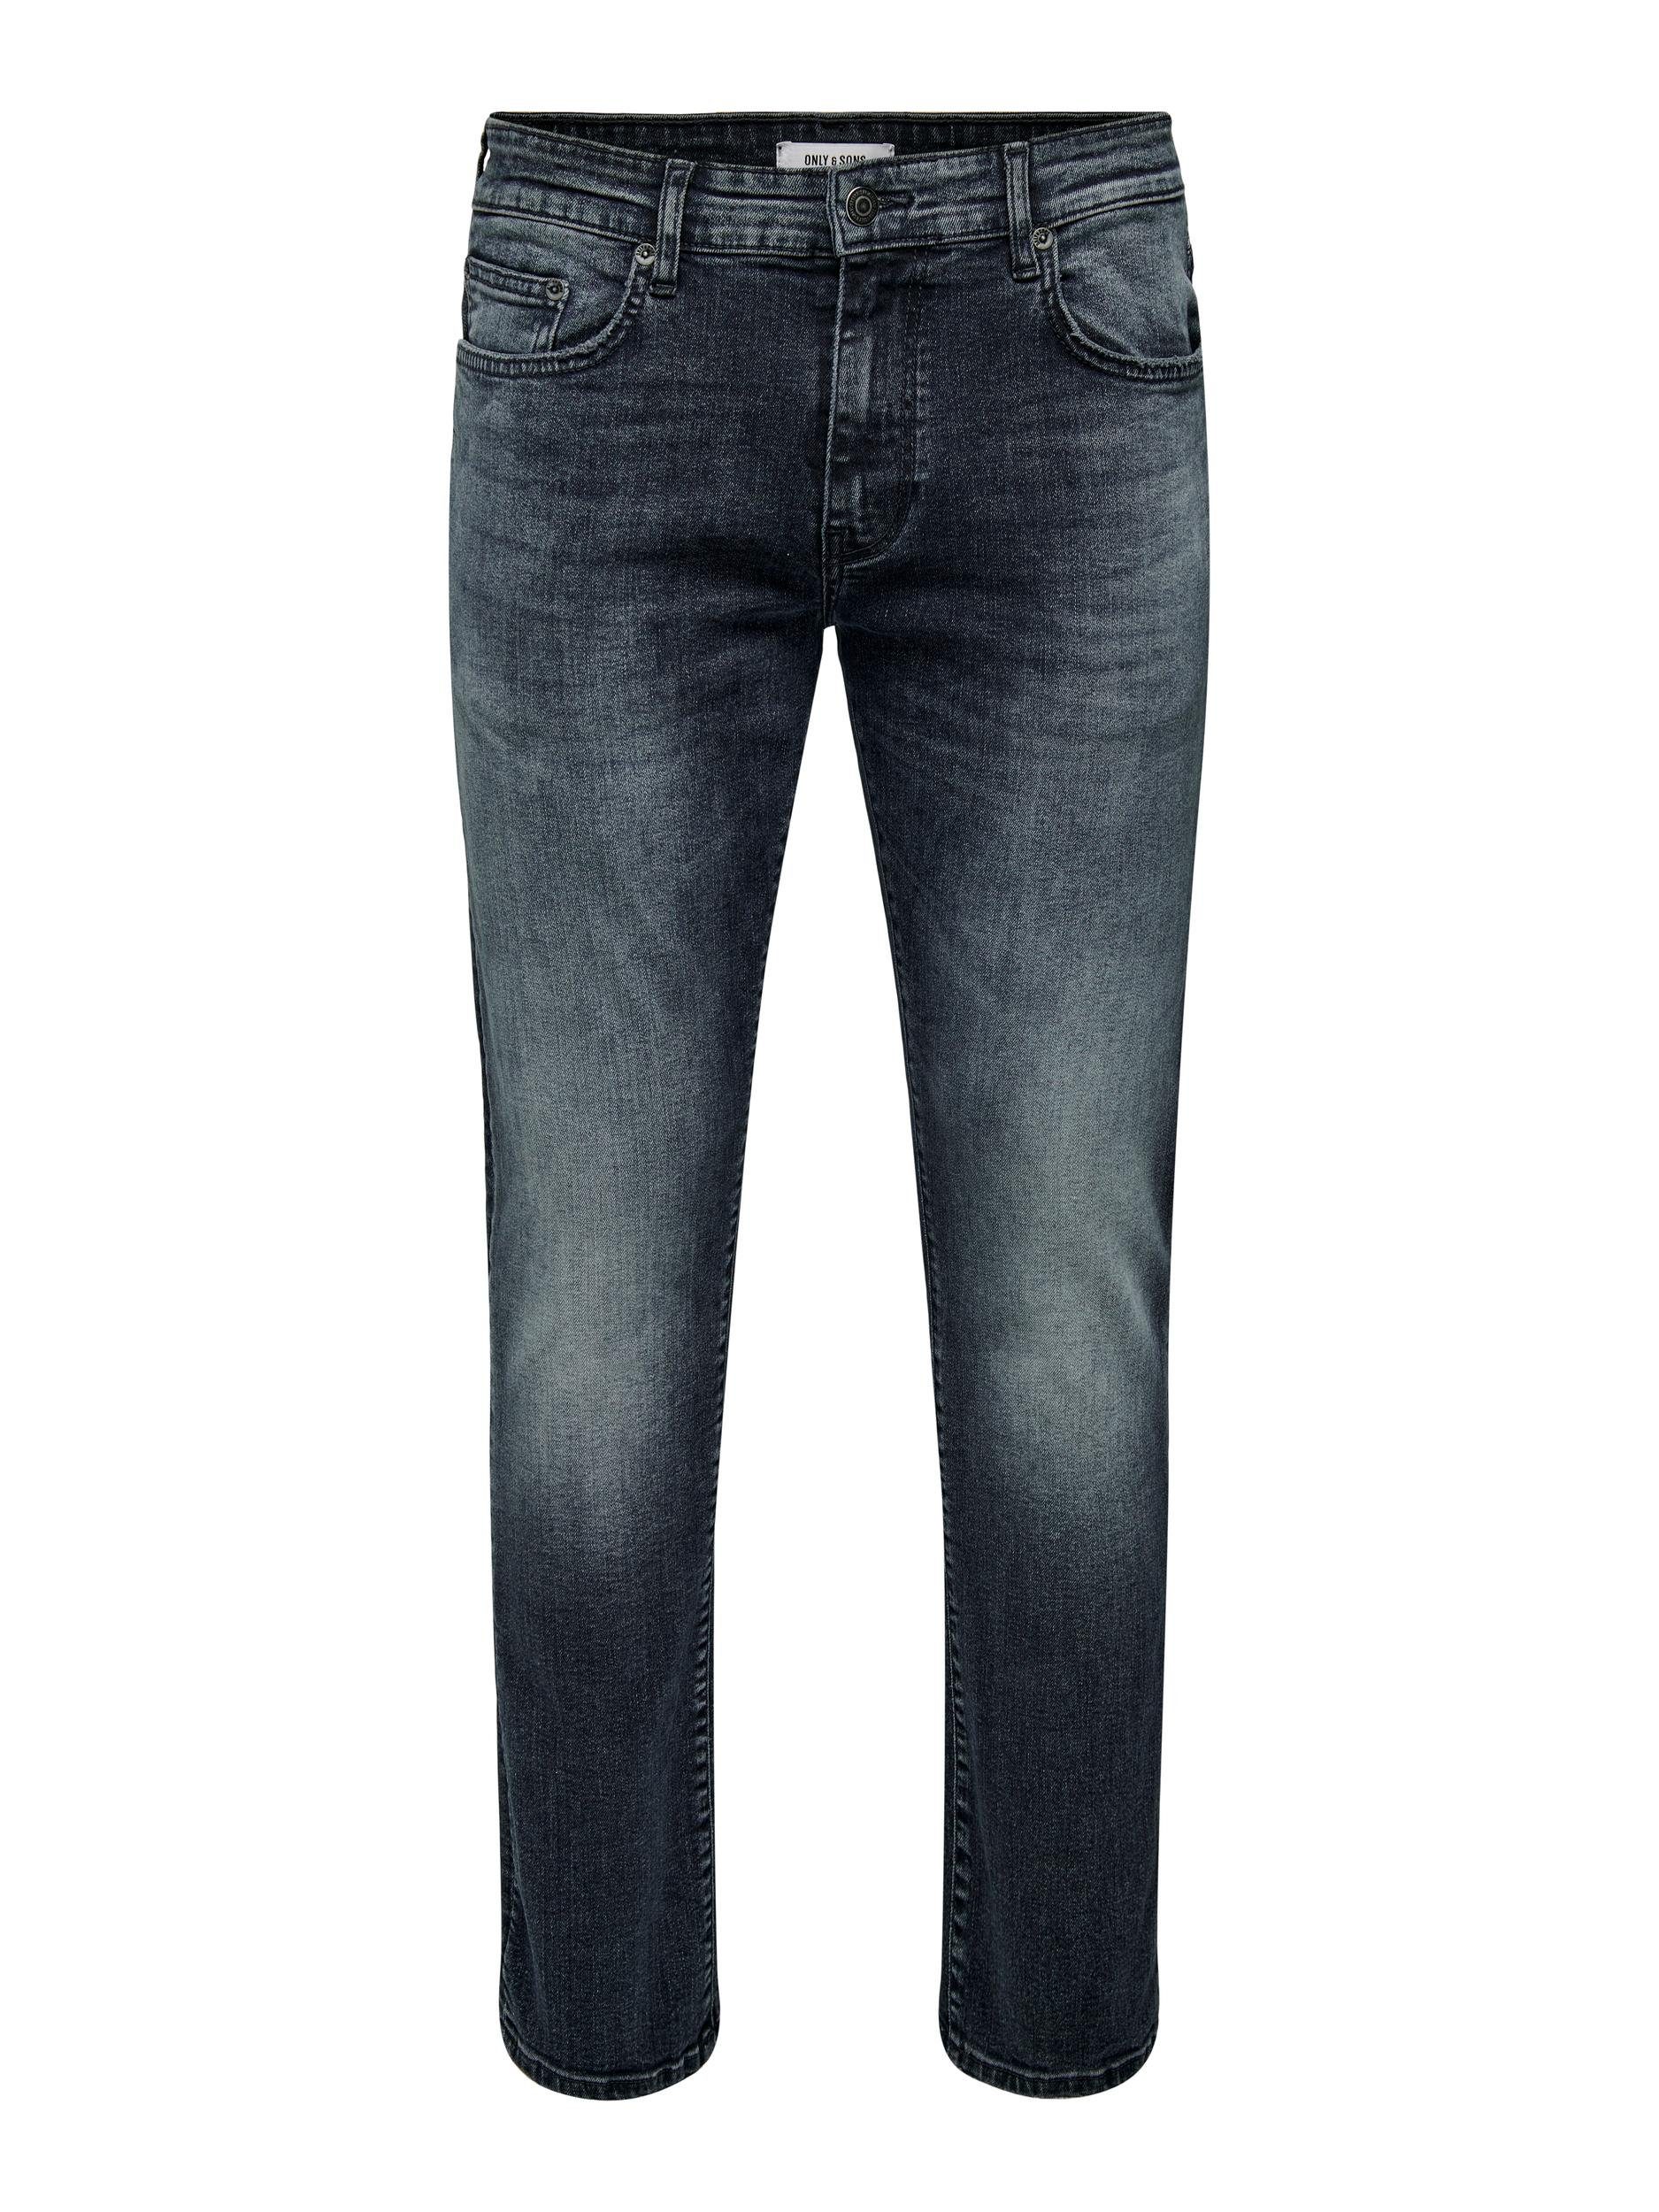 ONLY & SONS Denim GREY VD ONSWEFT D. 6458 Blue JEANS Slim-fit-Jeans REG. Black